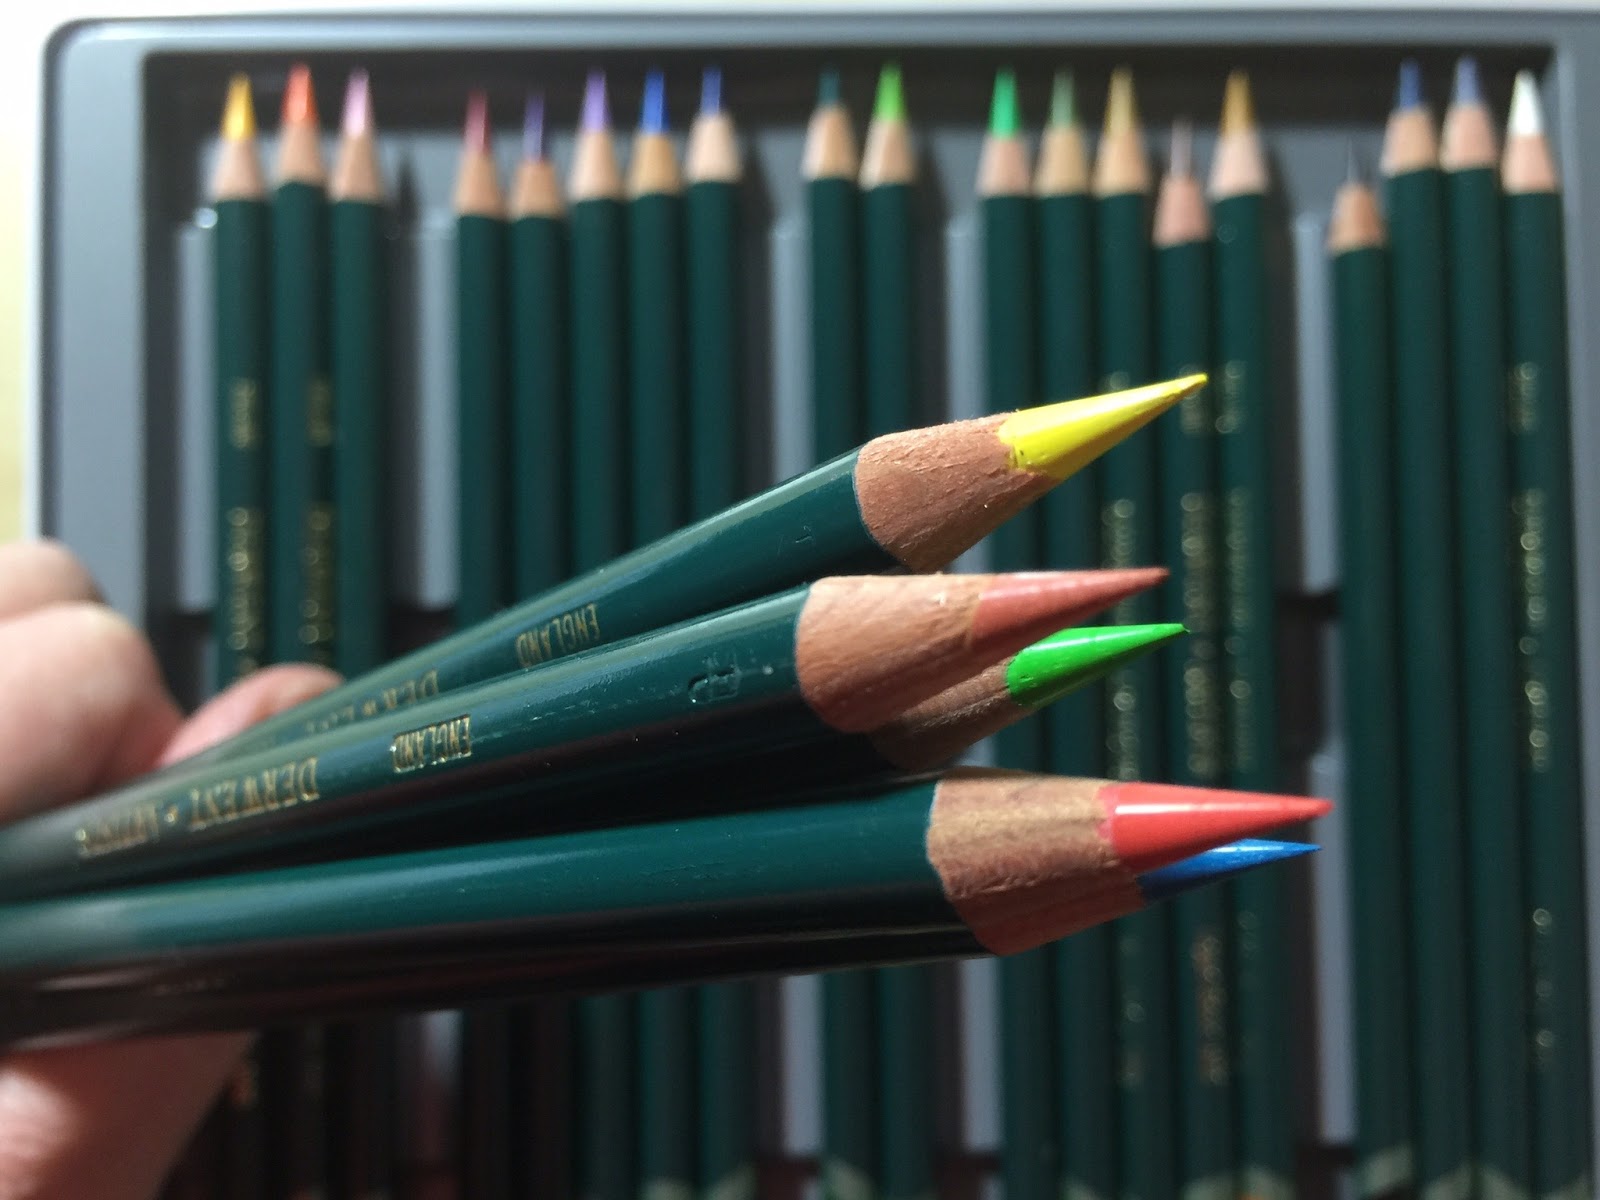 Derwent Artist Pencils